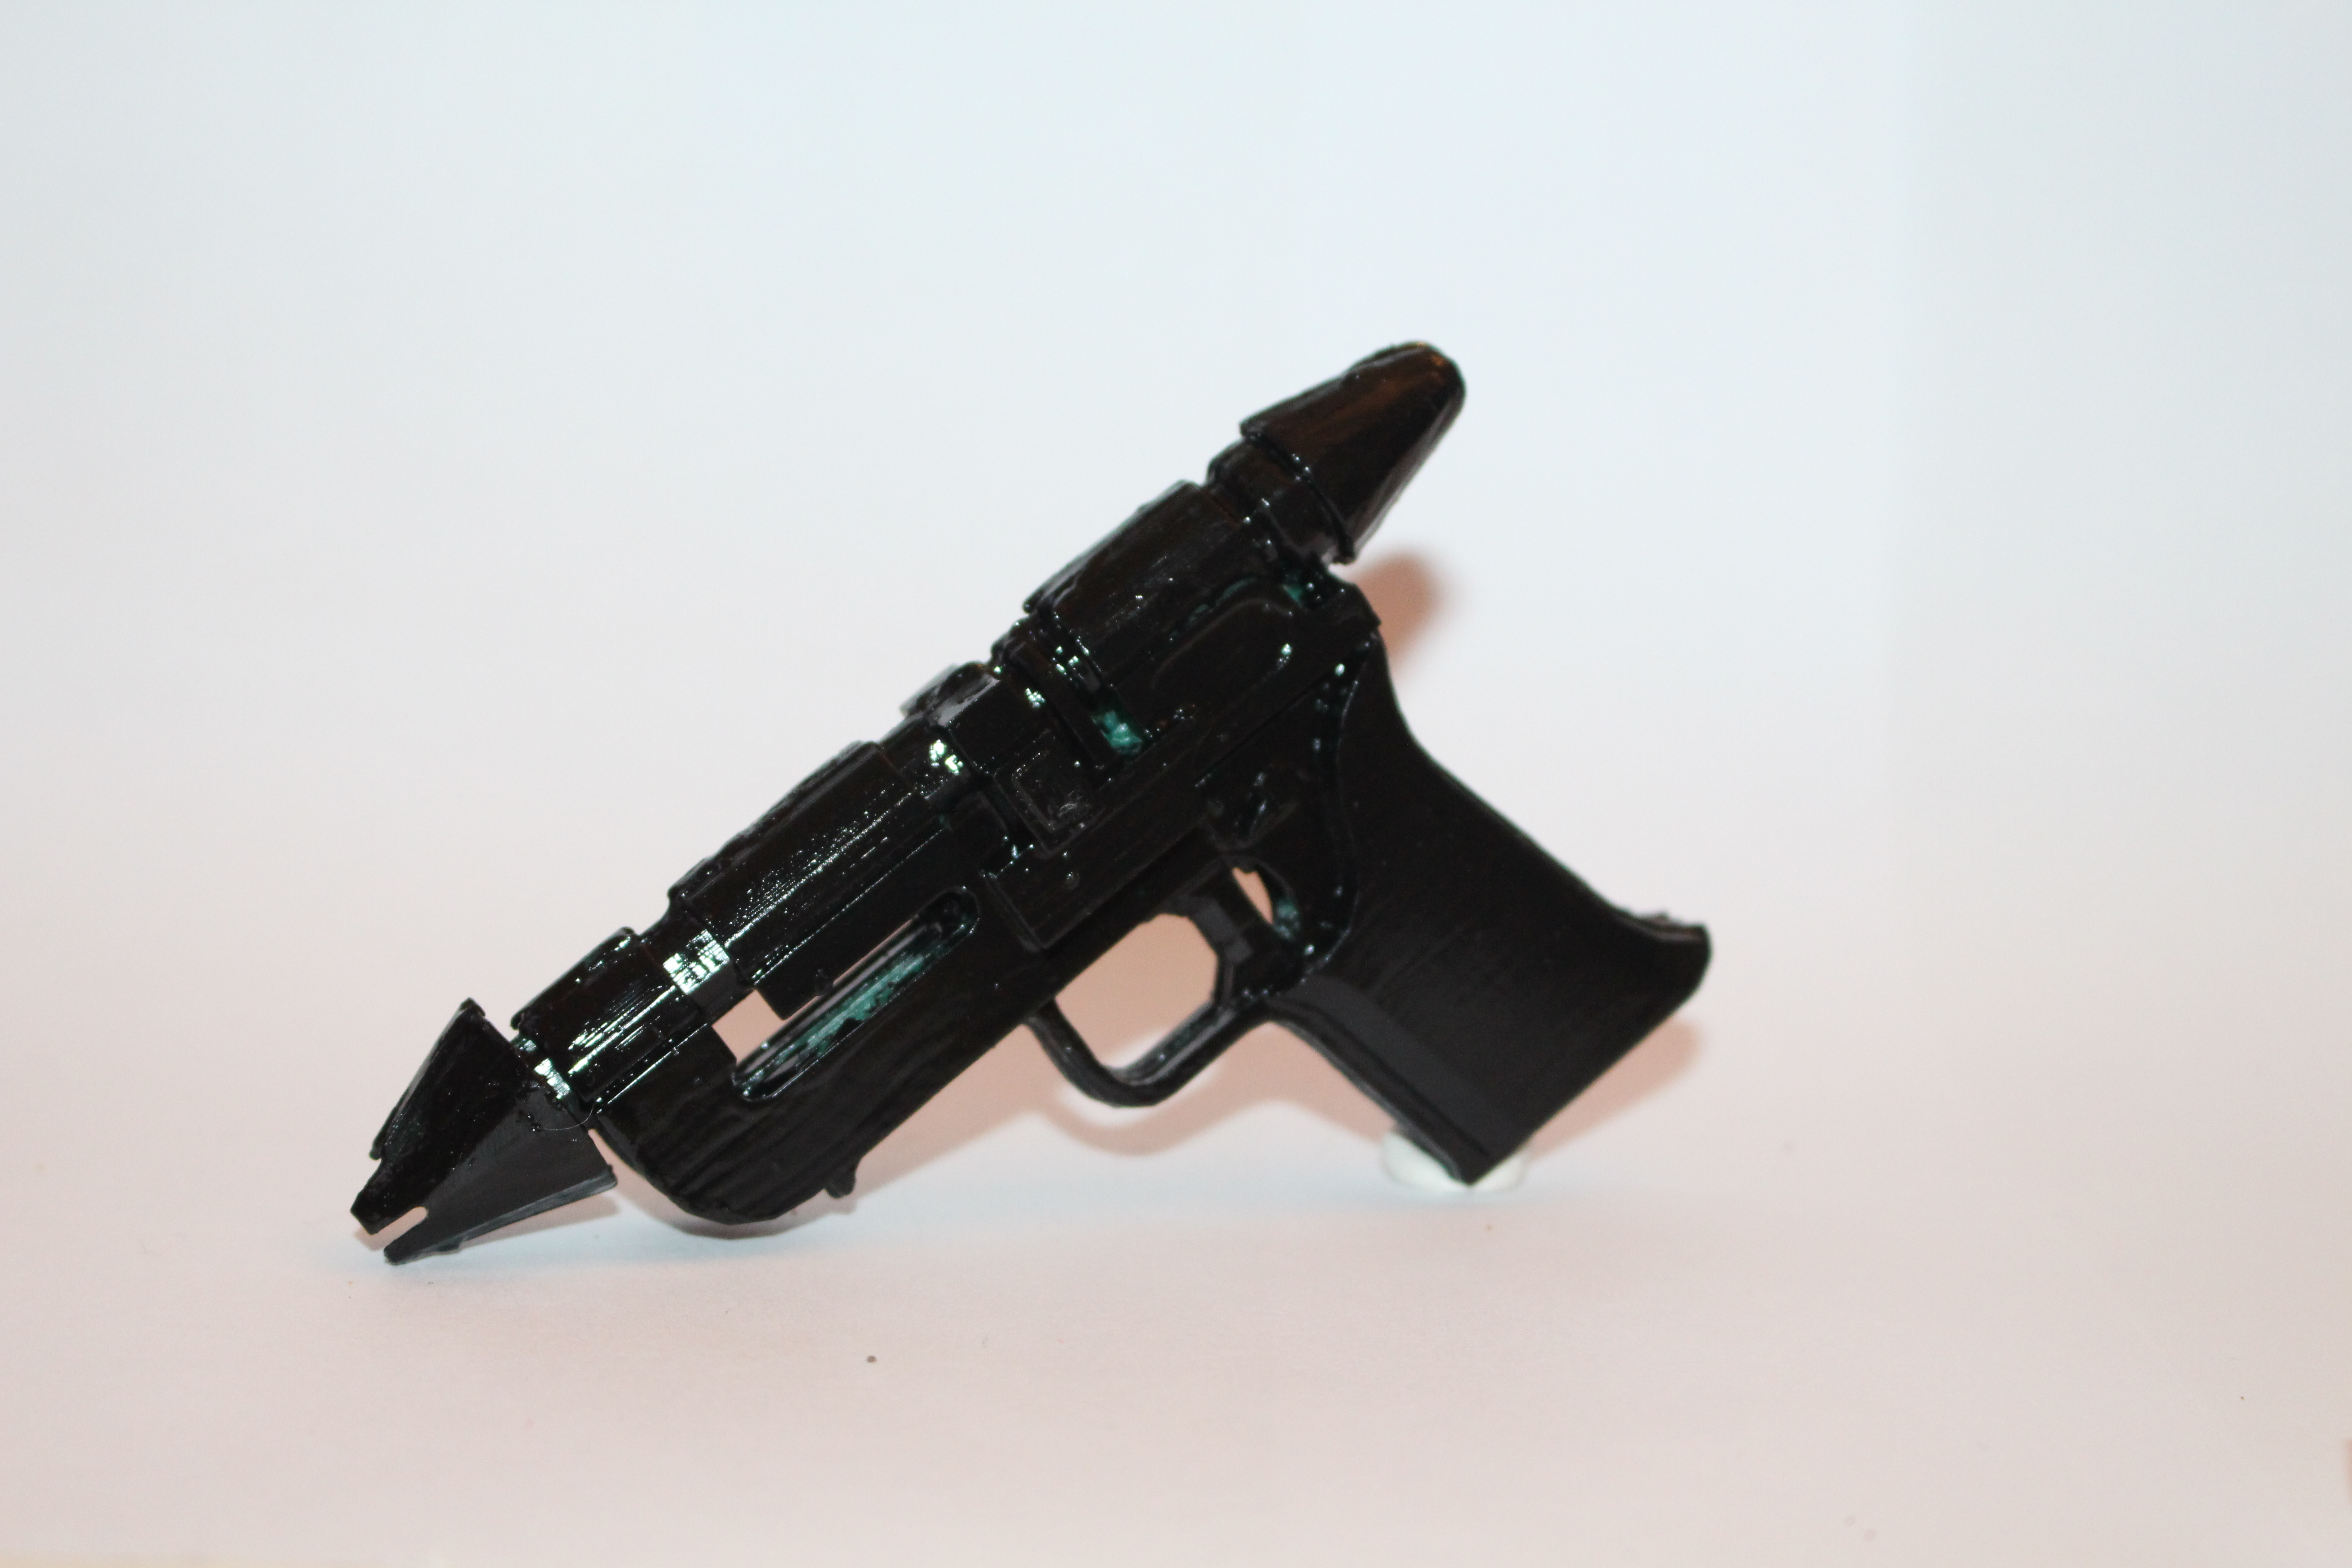 RK-3 blaster pistol from Starwars and Starwars battlefront 2